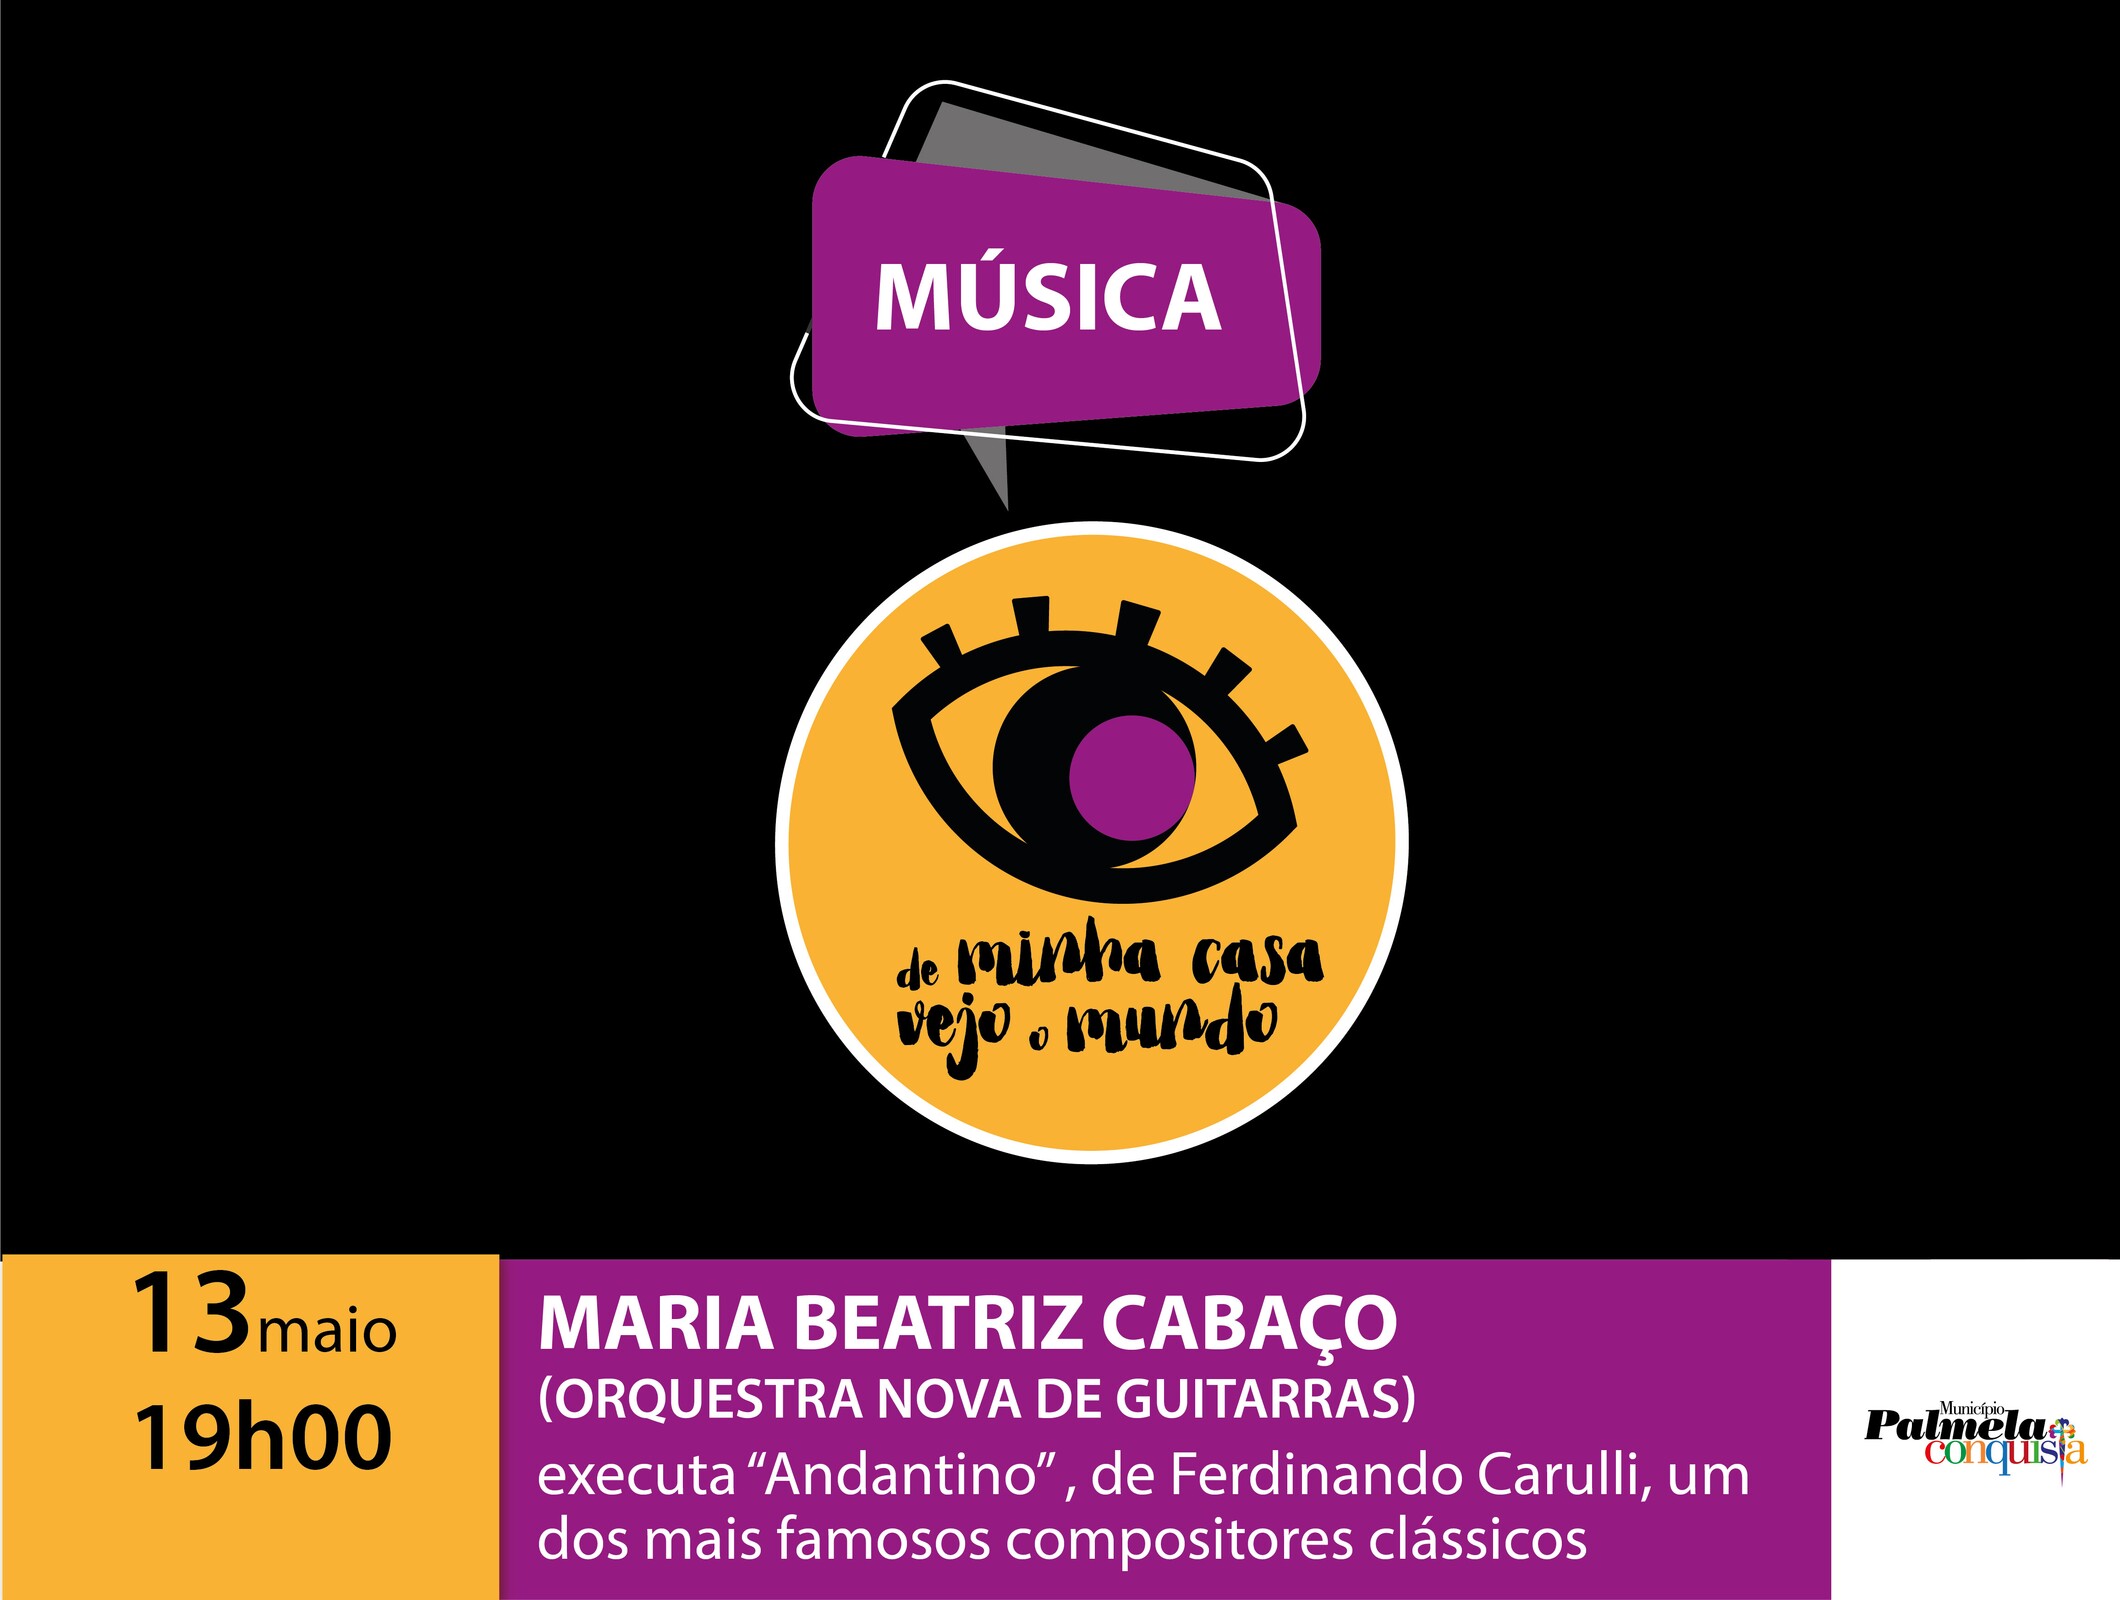 “De minha casa vejo o mundo”: aprecie o som da guitarra de Maria Beatriz Cabaço!